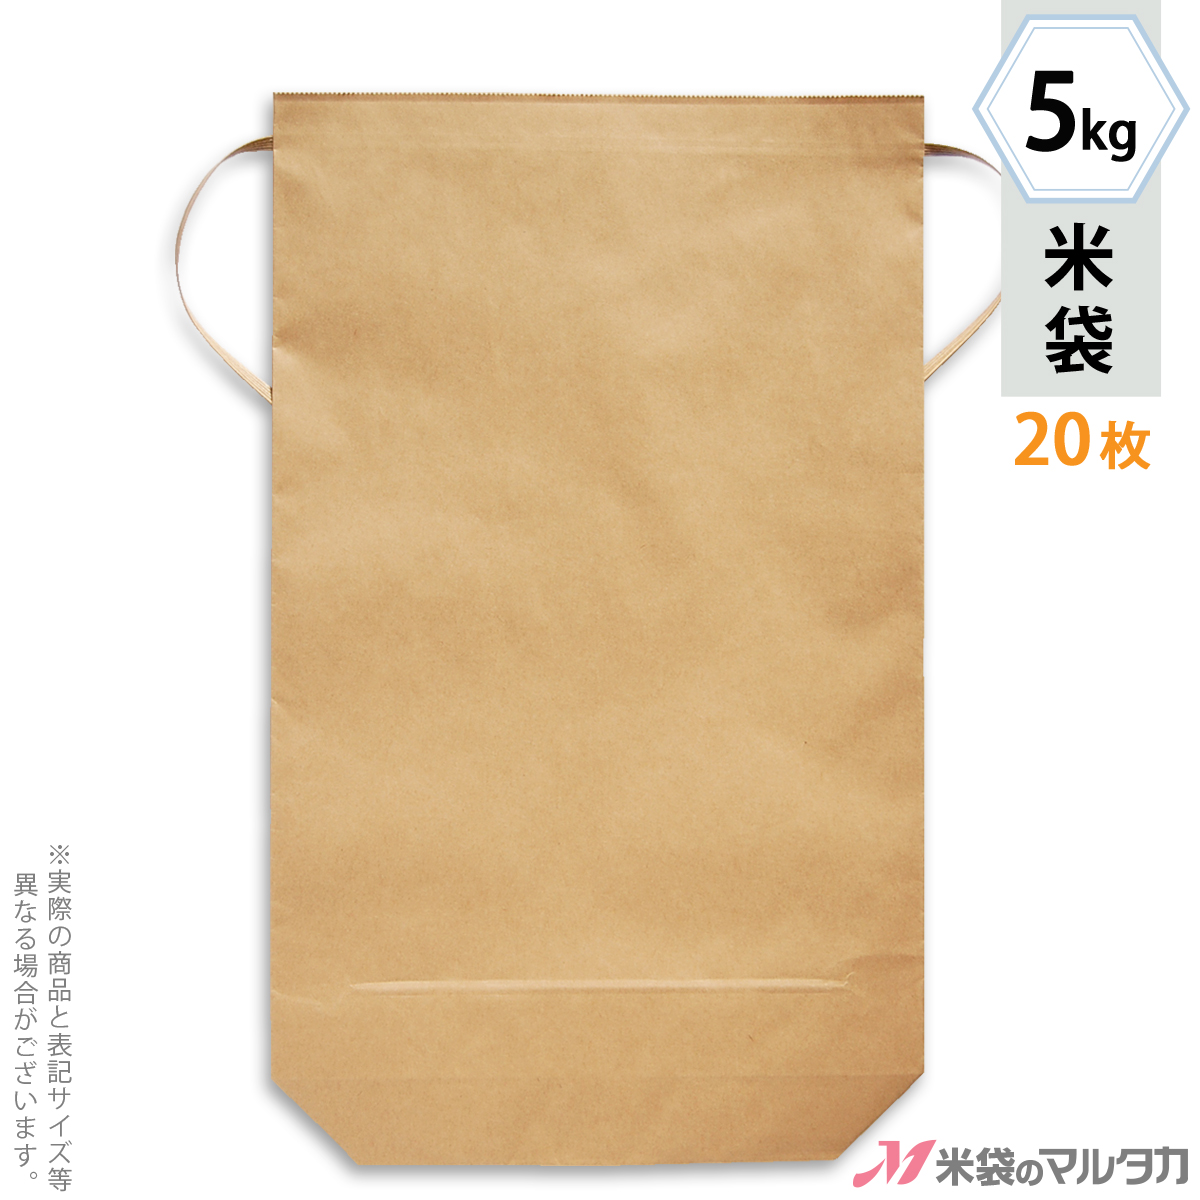 【楽天市場】米袋 ラミ フレブレス 富山産てんたかく 天空 5kg 100枚